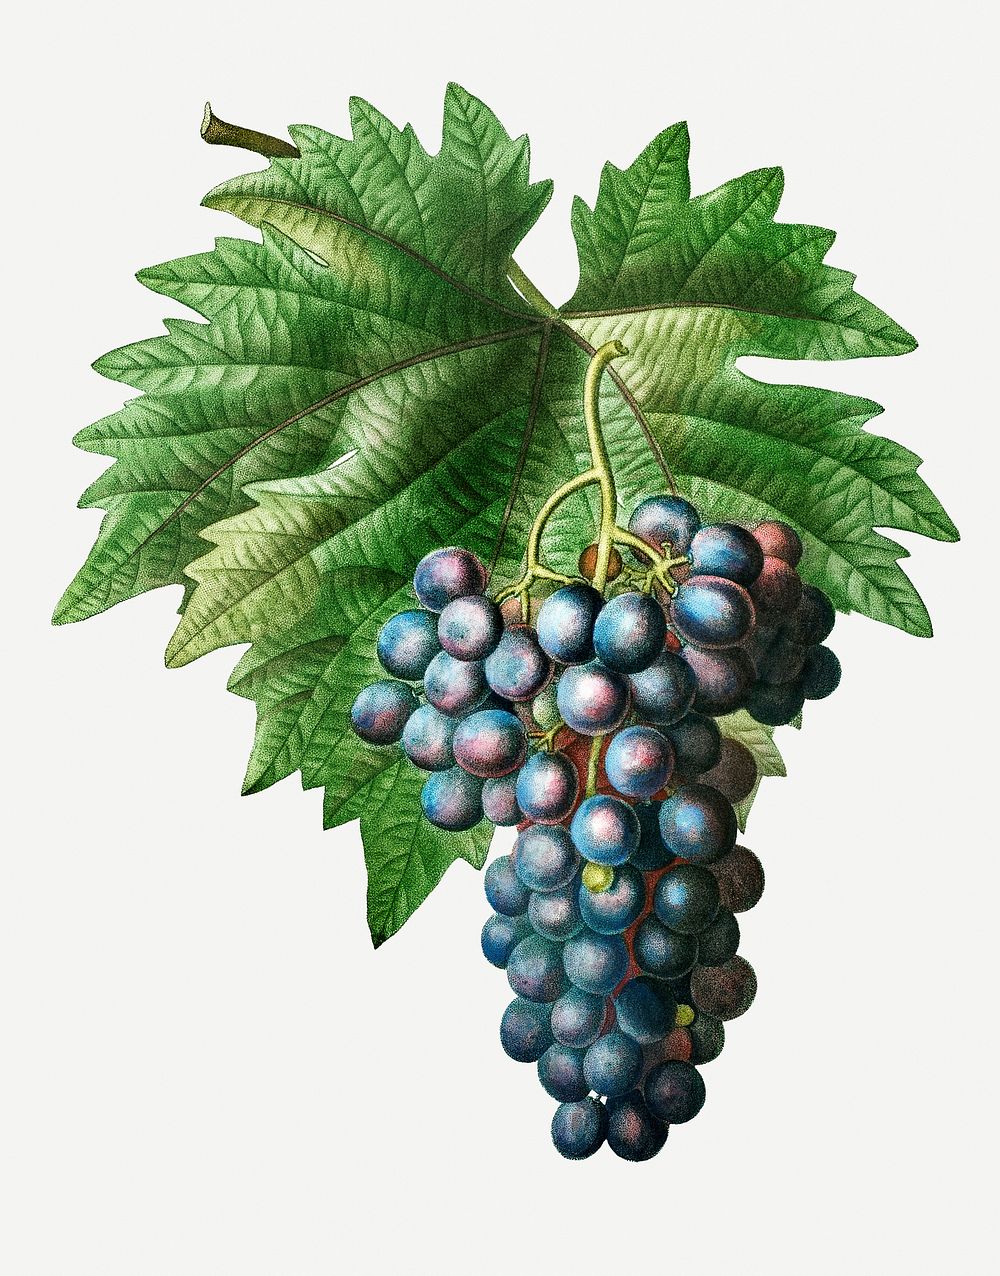 Vintage grape vine branch illustration